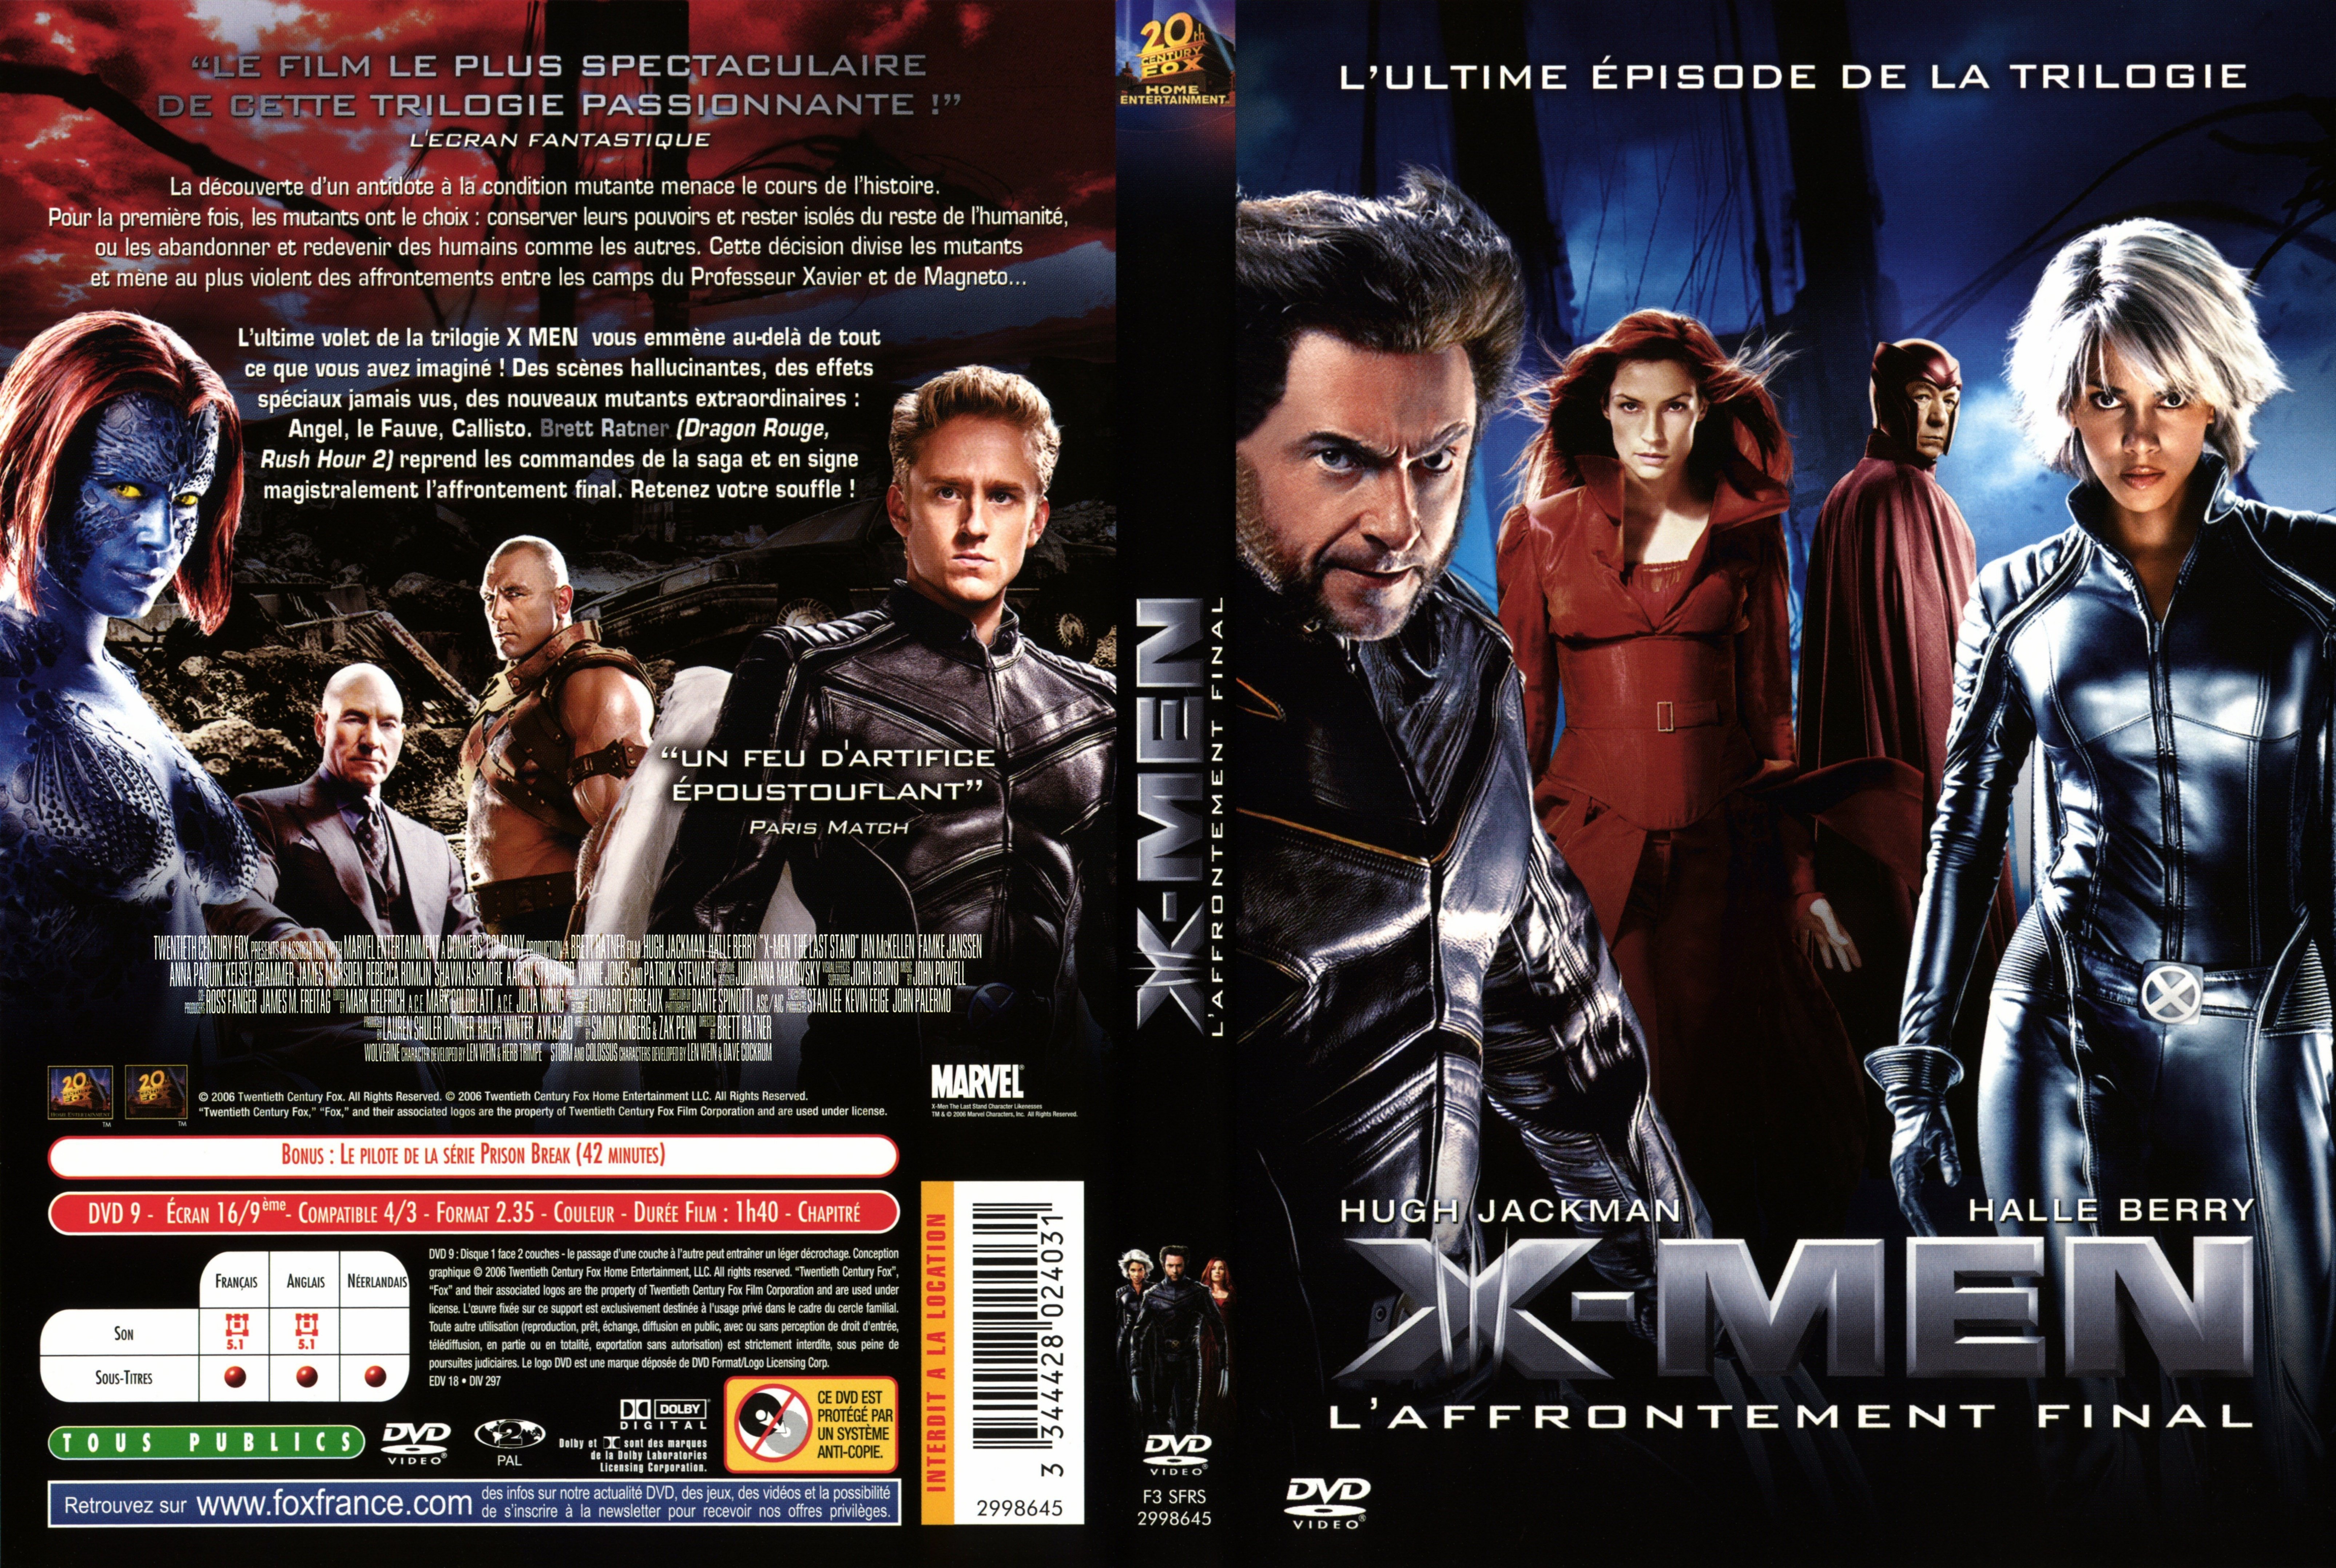 Jaquette DVD X-men 3 v2